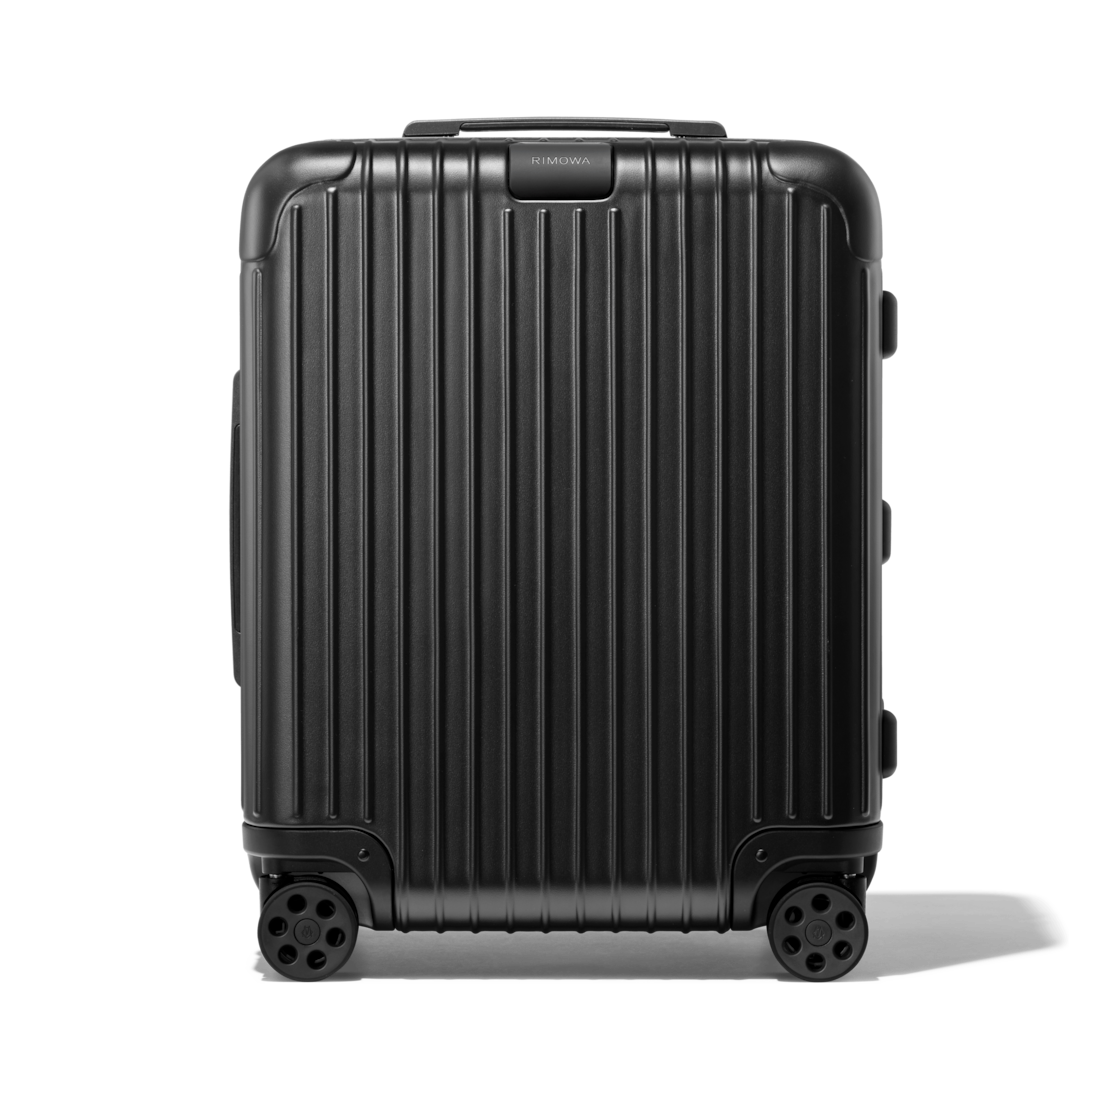 rimowa large luggage size